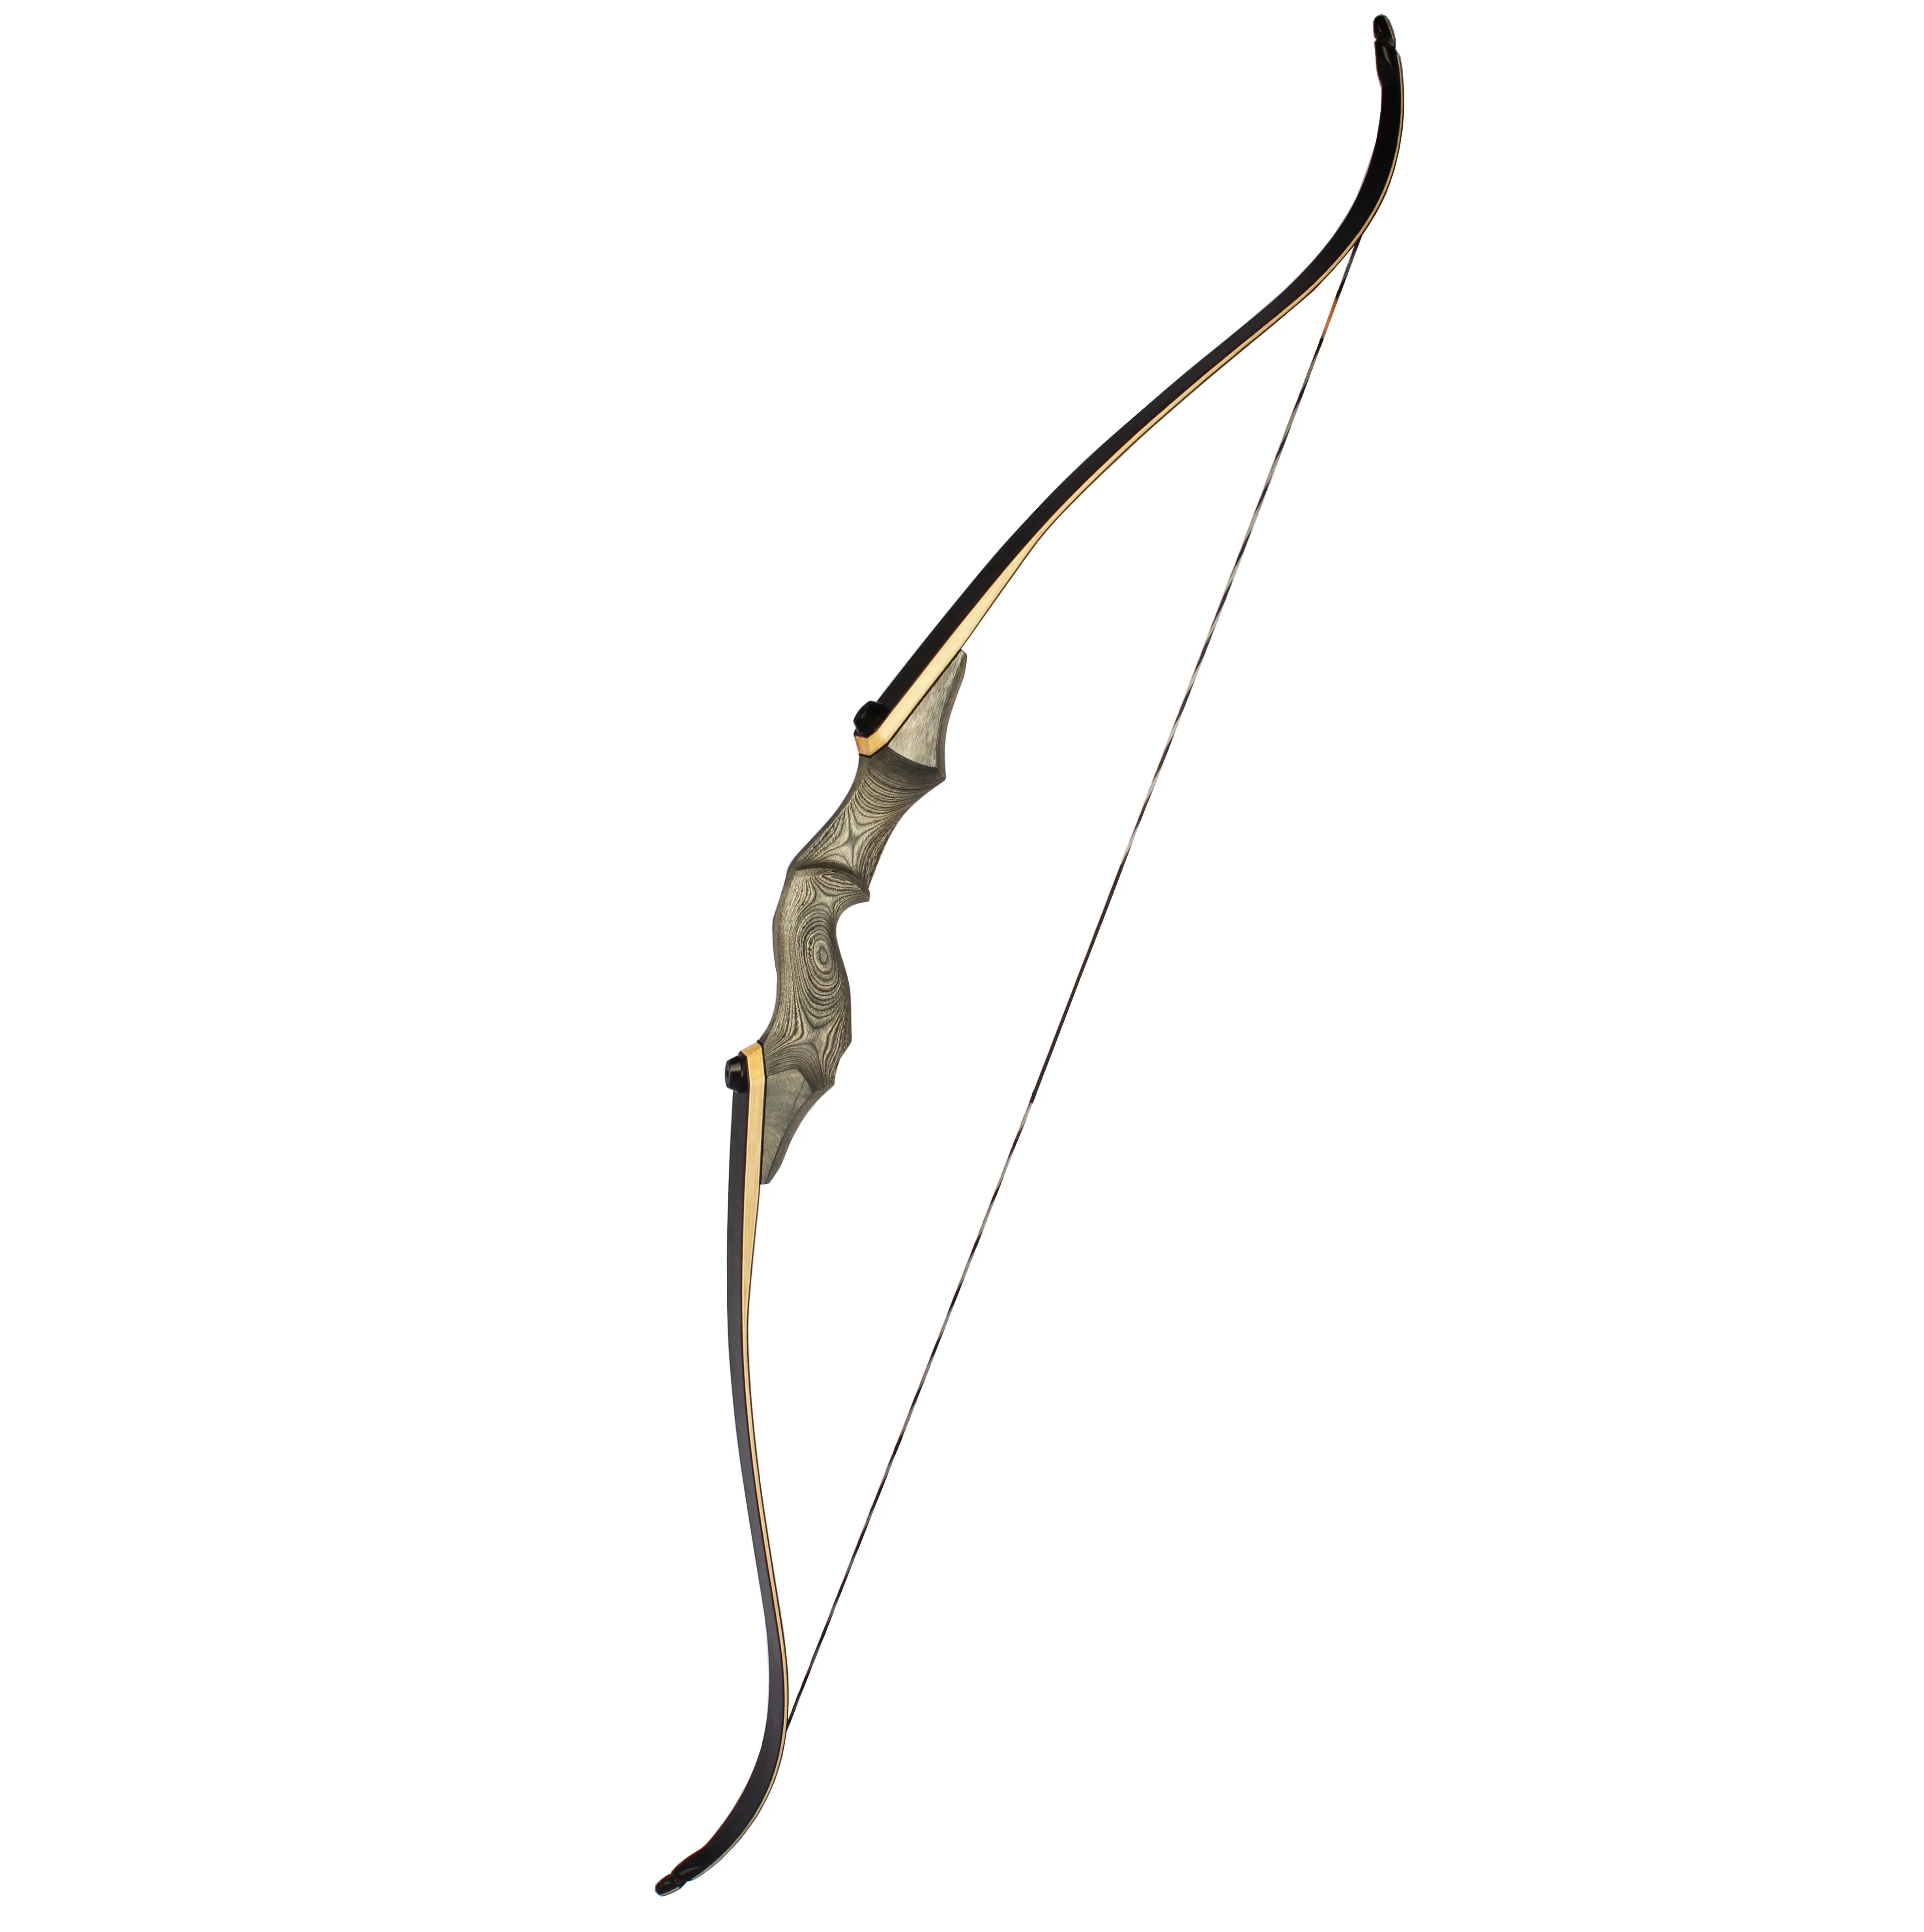 Arco recurvo de competición de pesca de caza, Flecha de Tiro con Arco 30-50 libras, elevador de madera, extremidades laminadas, F178